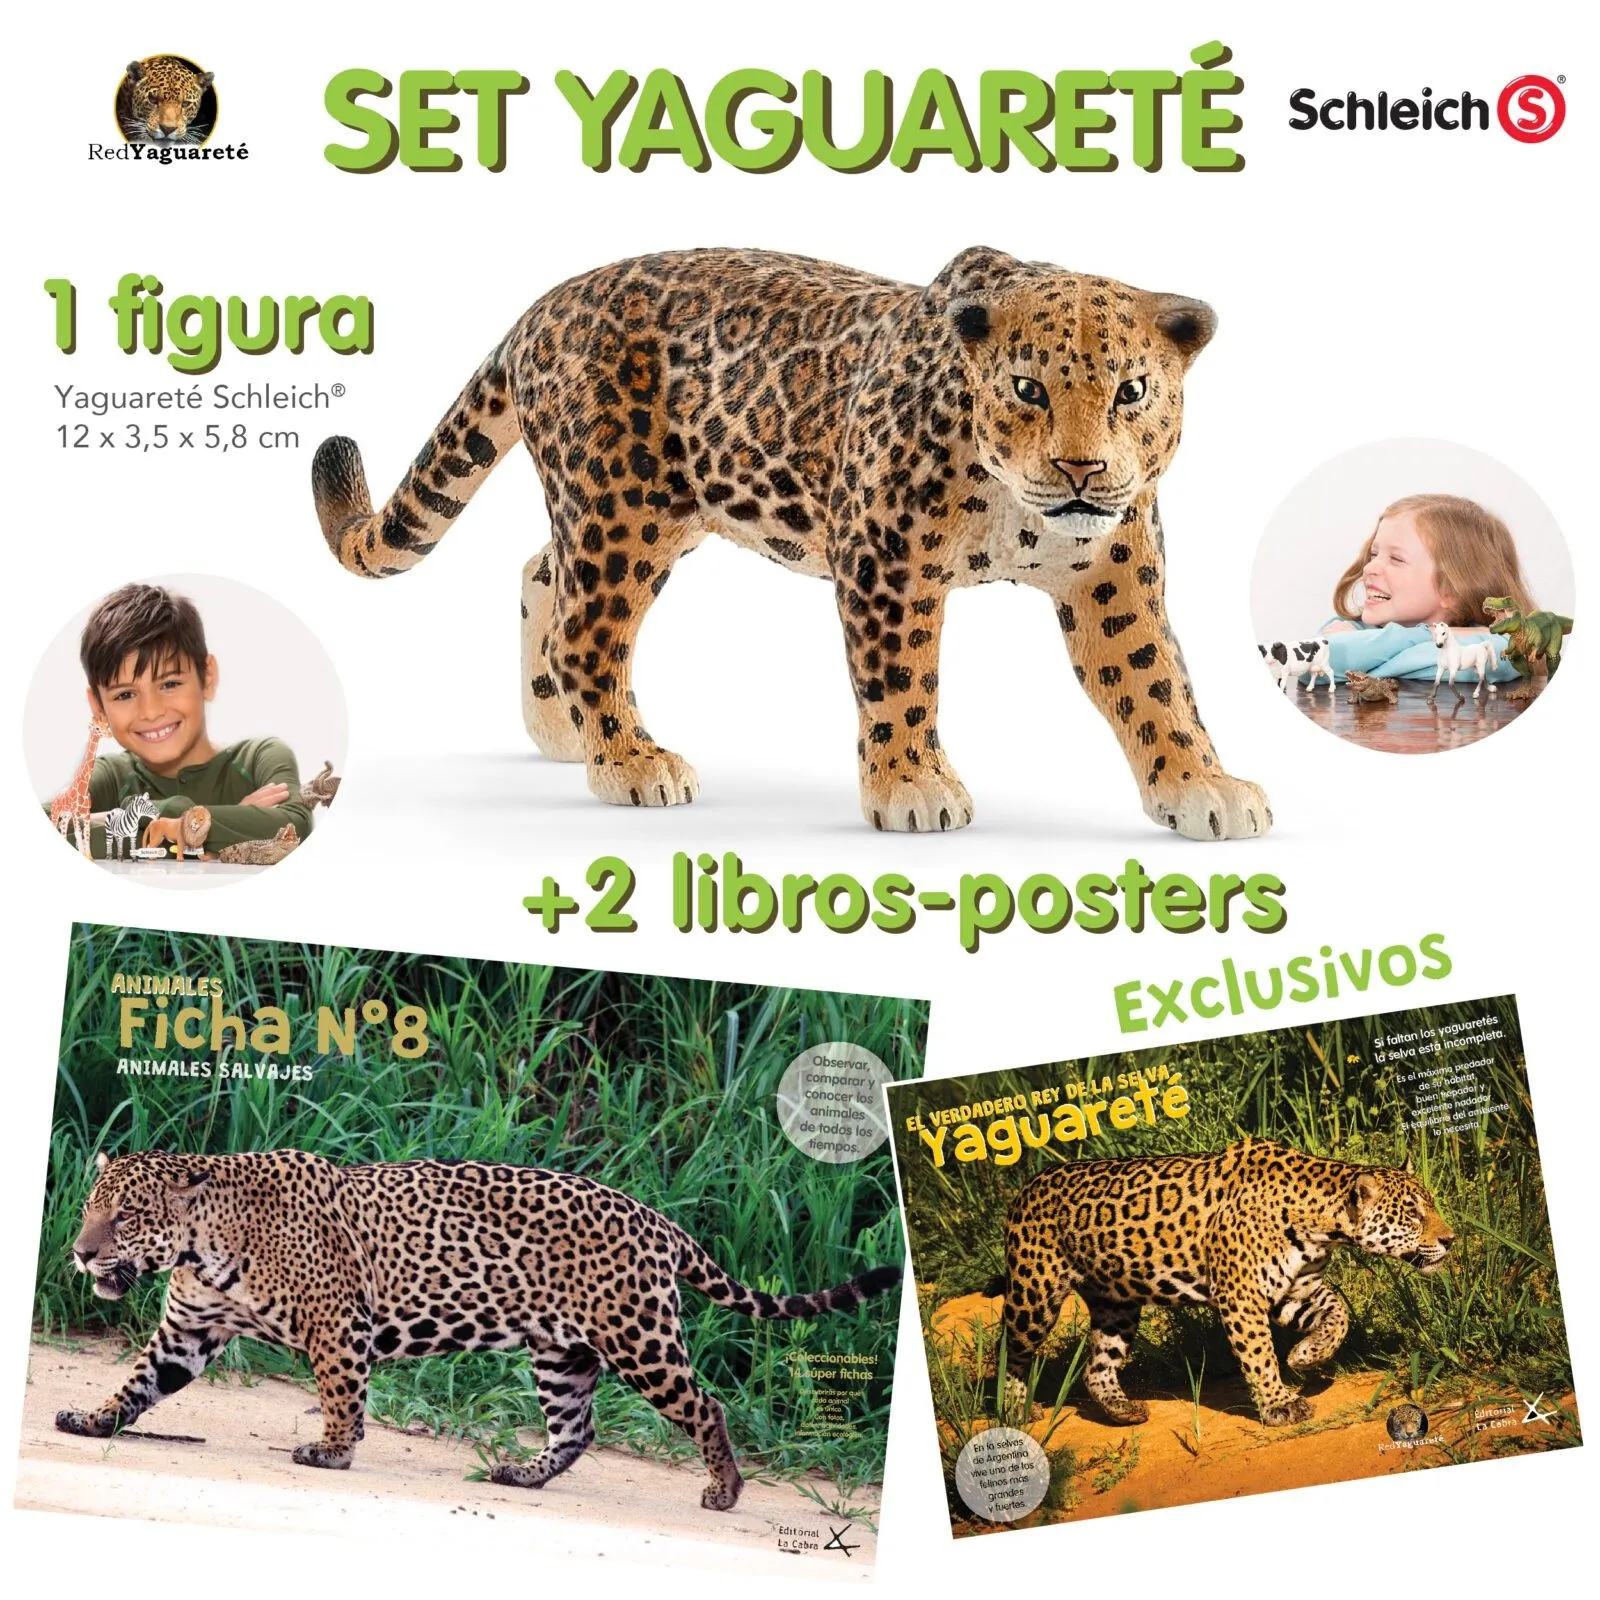 Set yaguareté - jaguar - Coolibar® · Schleich® · Chewy Tubes® - Tienda  Argentina